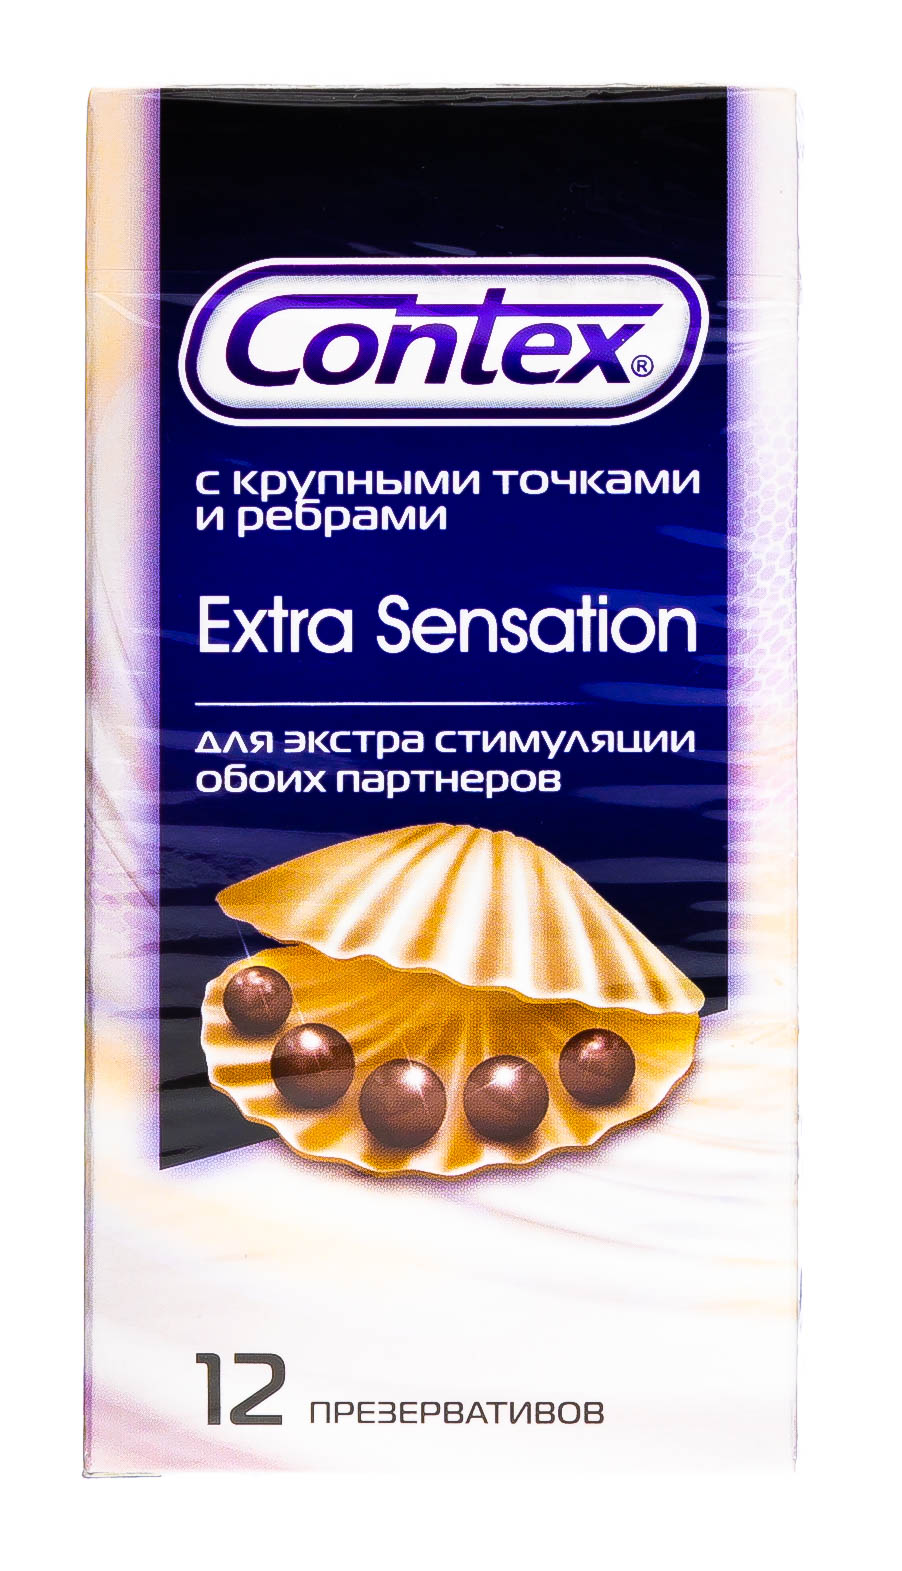 Contex Презервативы Extra Sensation с крупными точками и ребрами, 18 шт (Contex, Презервативы) цена и фото